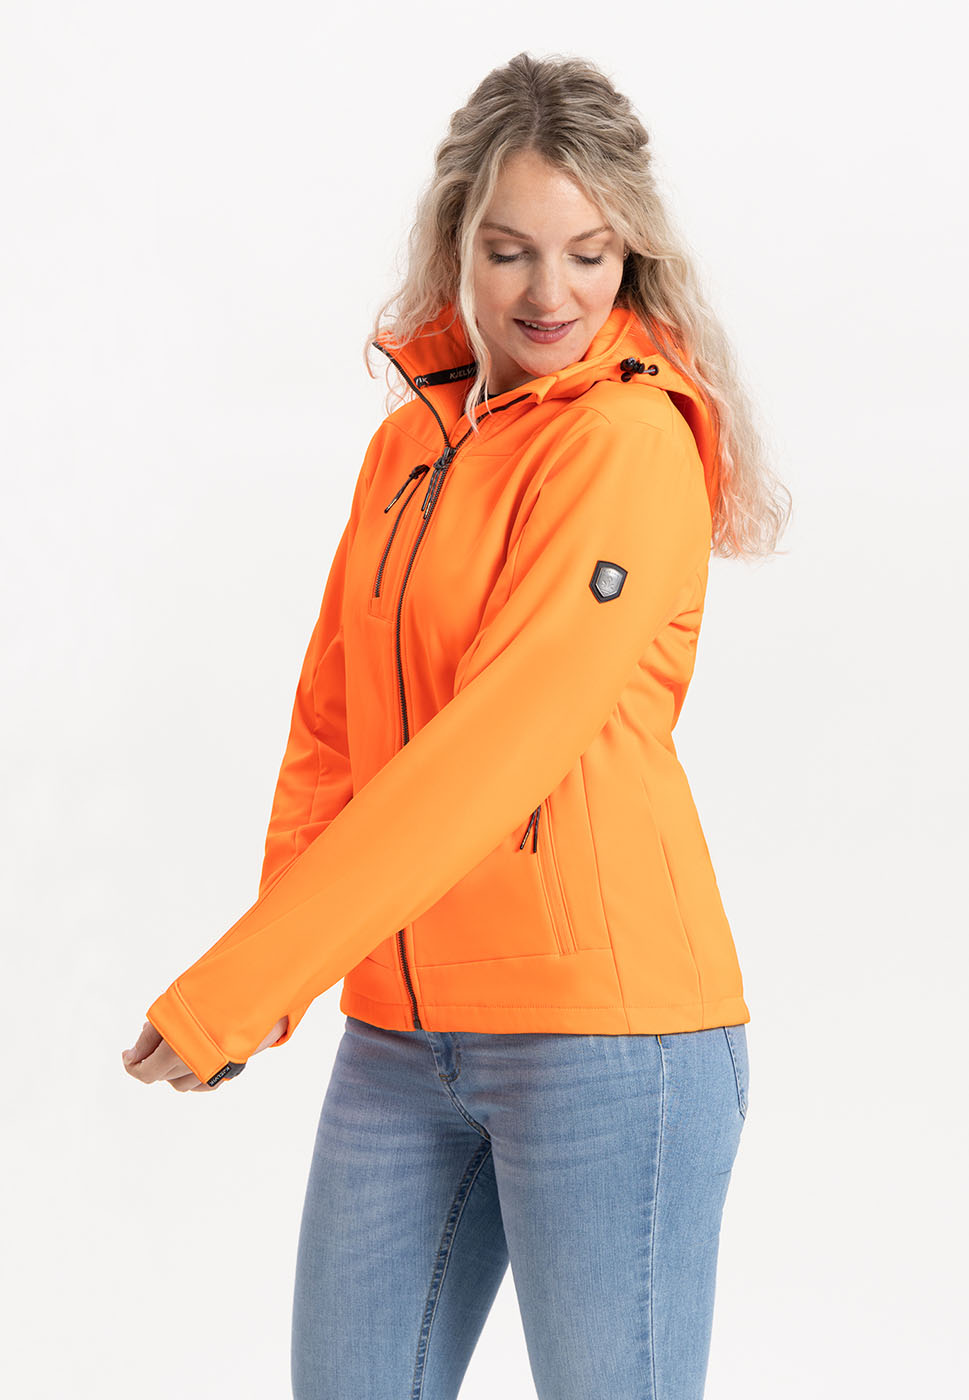 Kjelvik Scandinavian Clothing - Women Softshell Roxy Orange